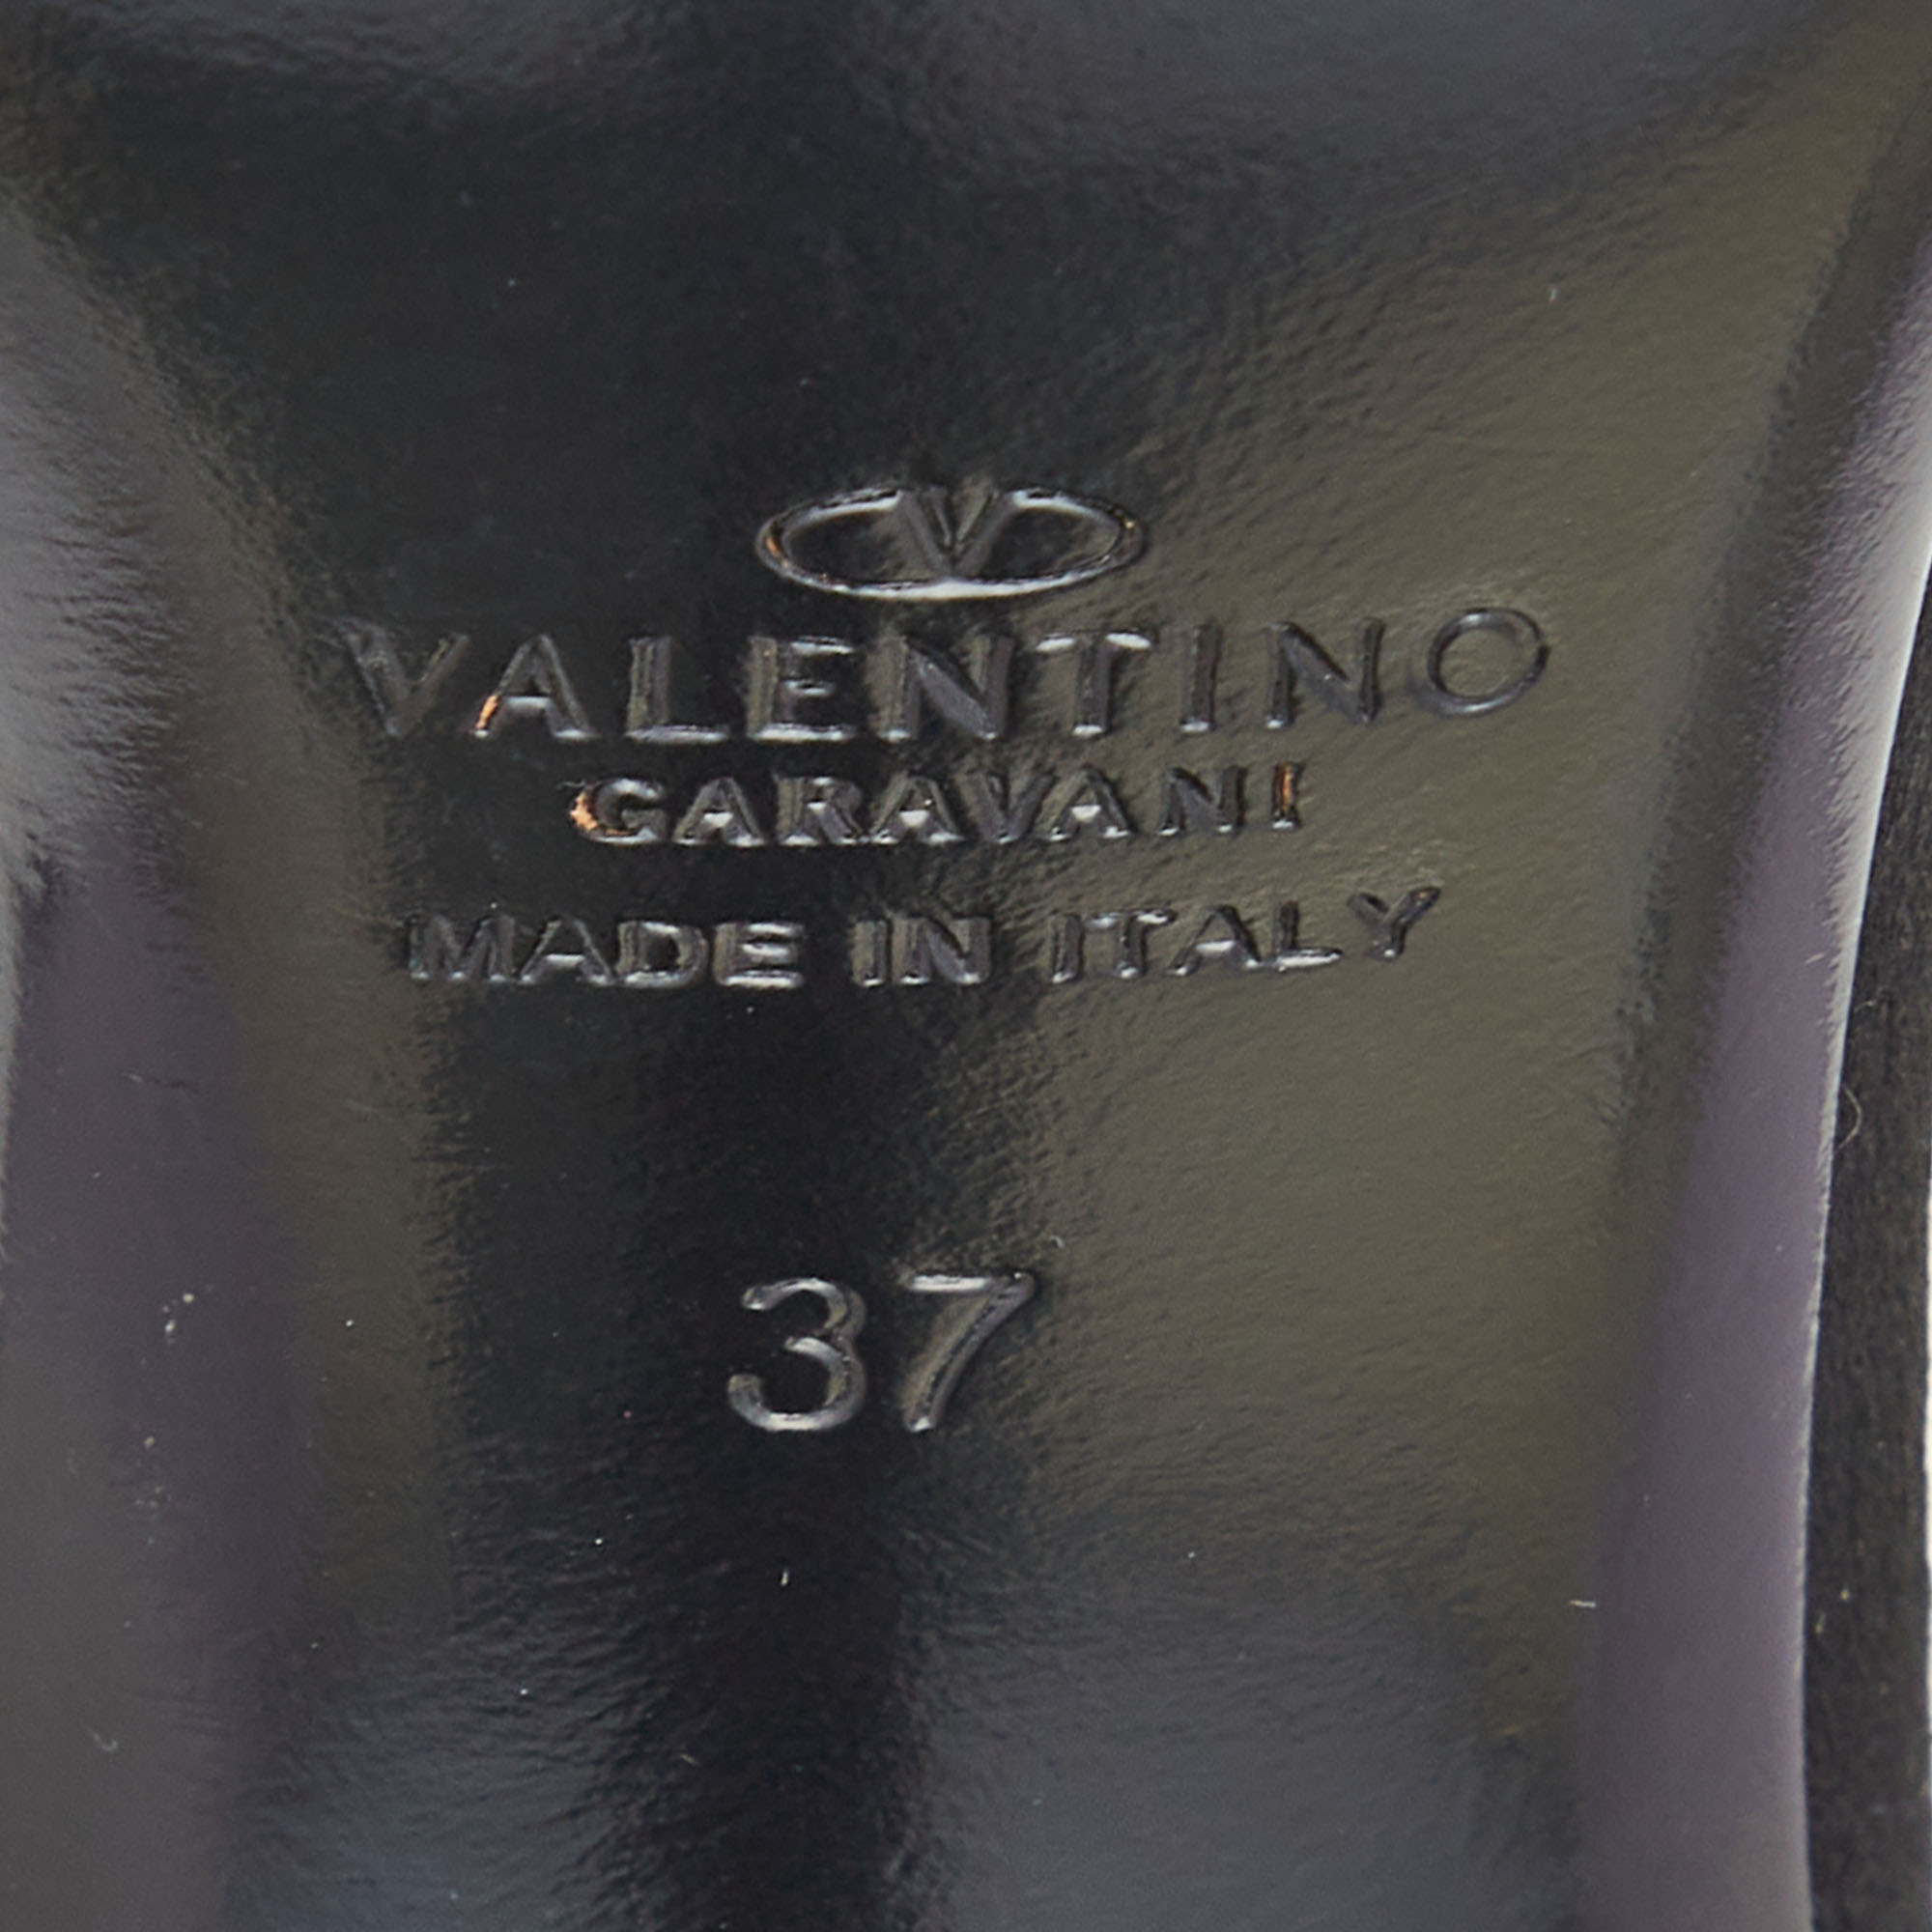 Valentino Black Satin Crystal Embellished Buckle Ankle Strap Sandals Size 37